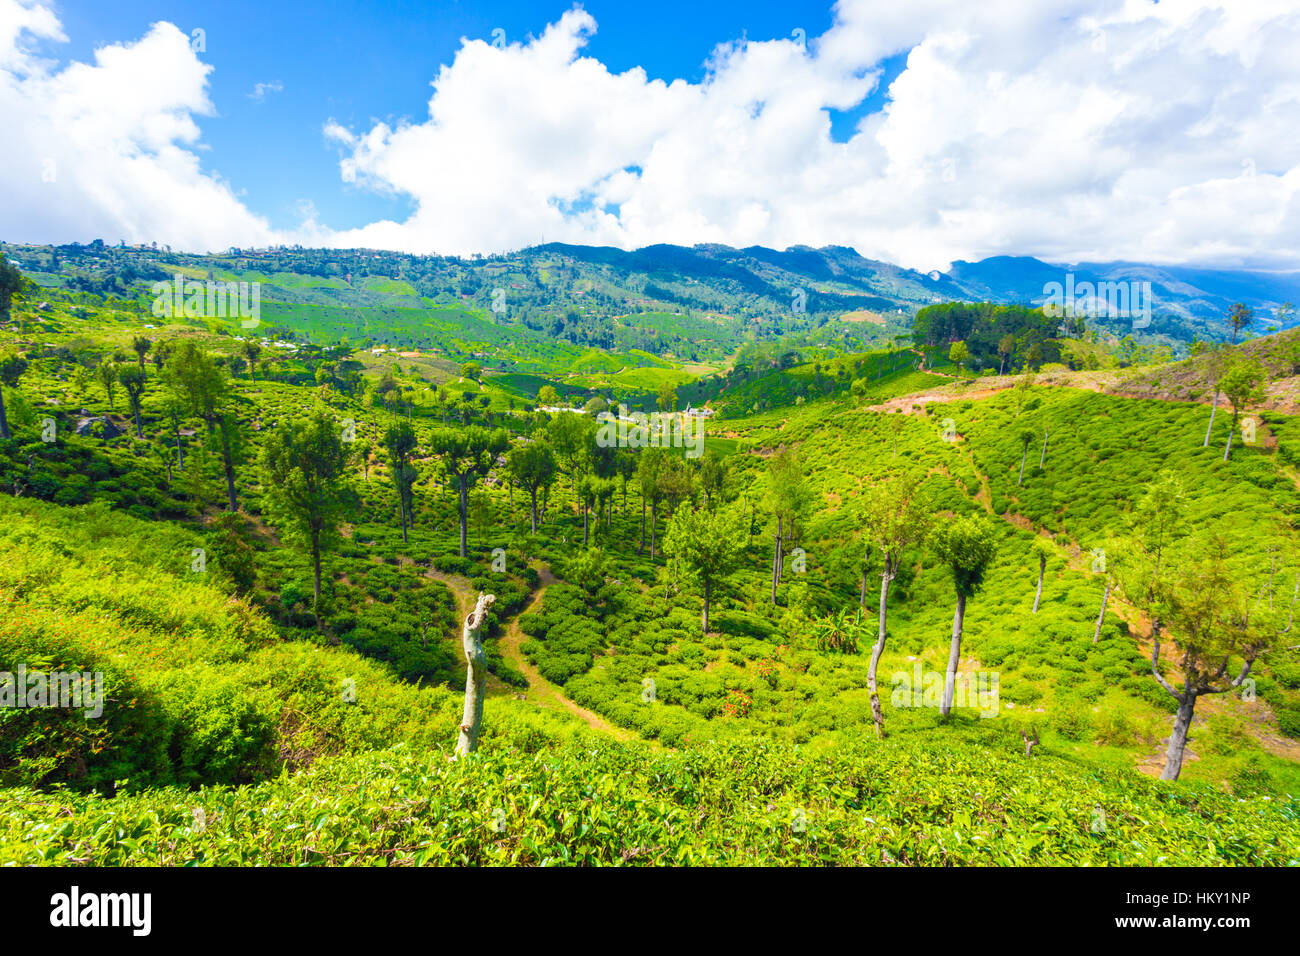 Malerische Landschaft Überblick über grünen Tee Plantage Immobilien-Tal und die umliegenden Berge rund um gepflegte Teepflanzen Stockfoto